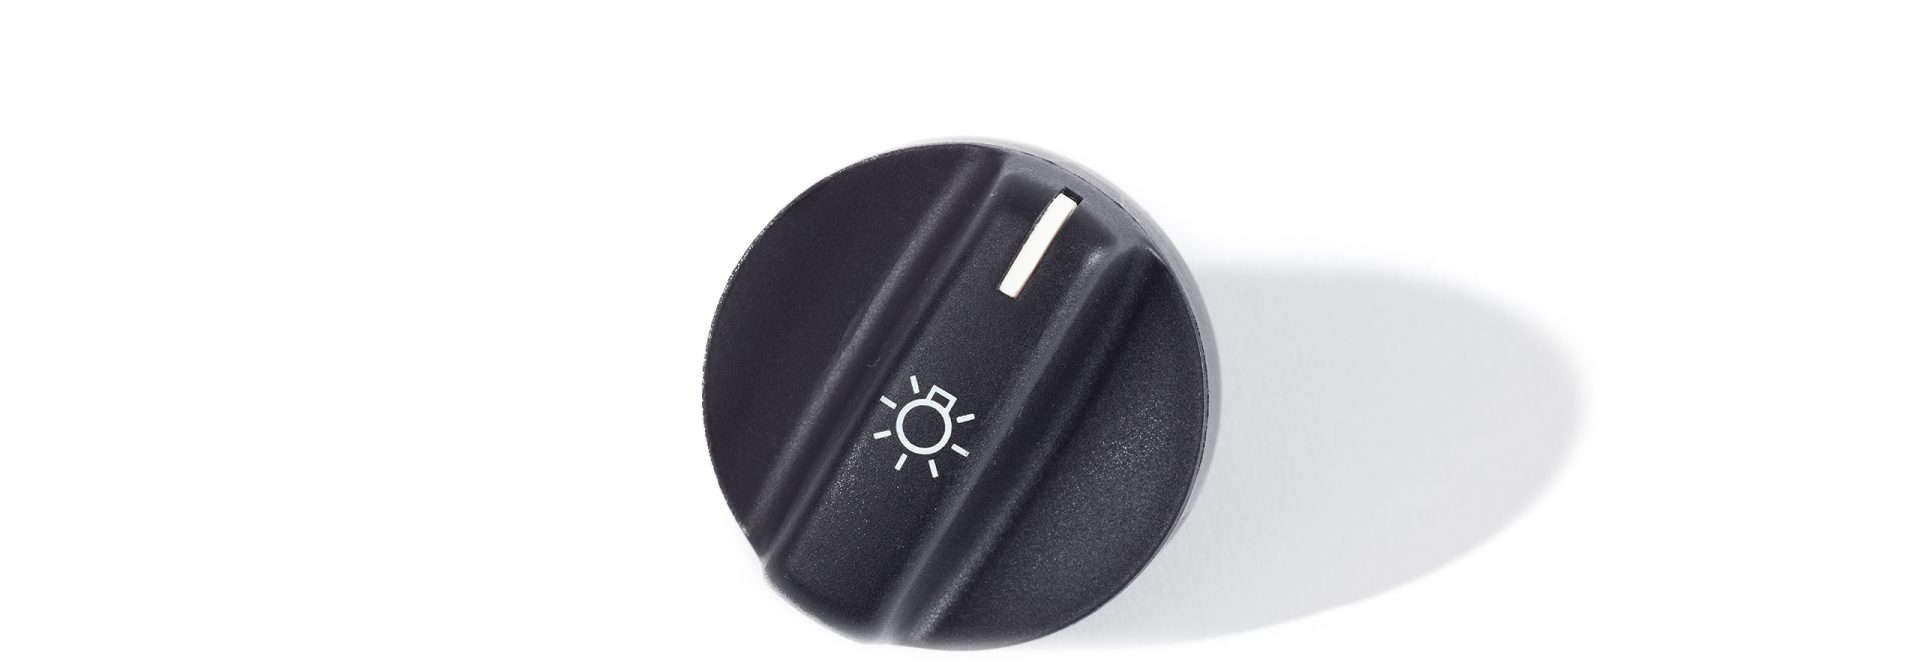 BMW Classic Nachfertigung Knopf für Lichtschalter